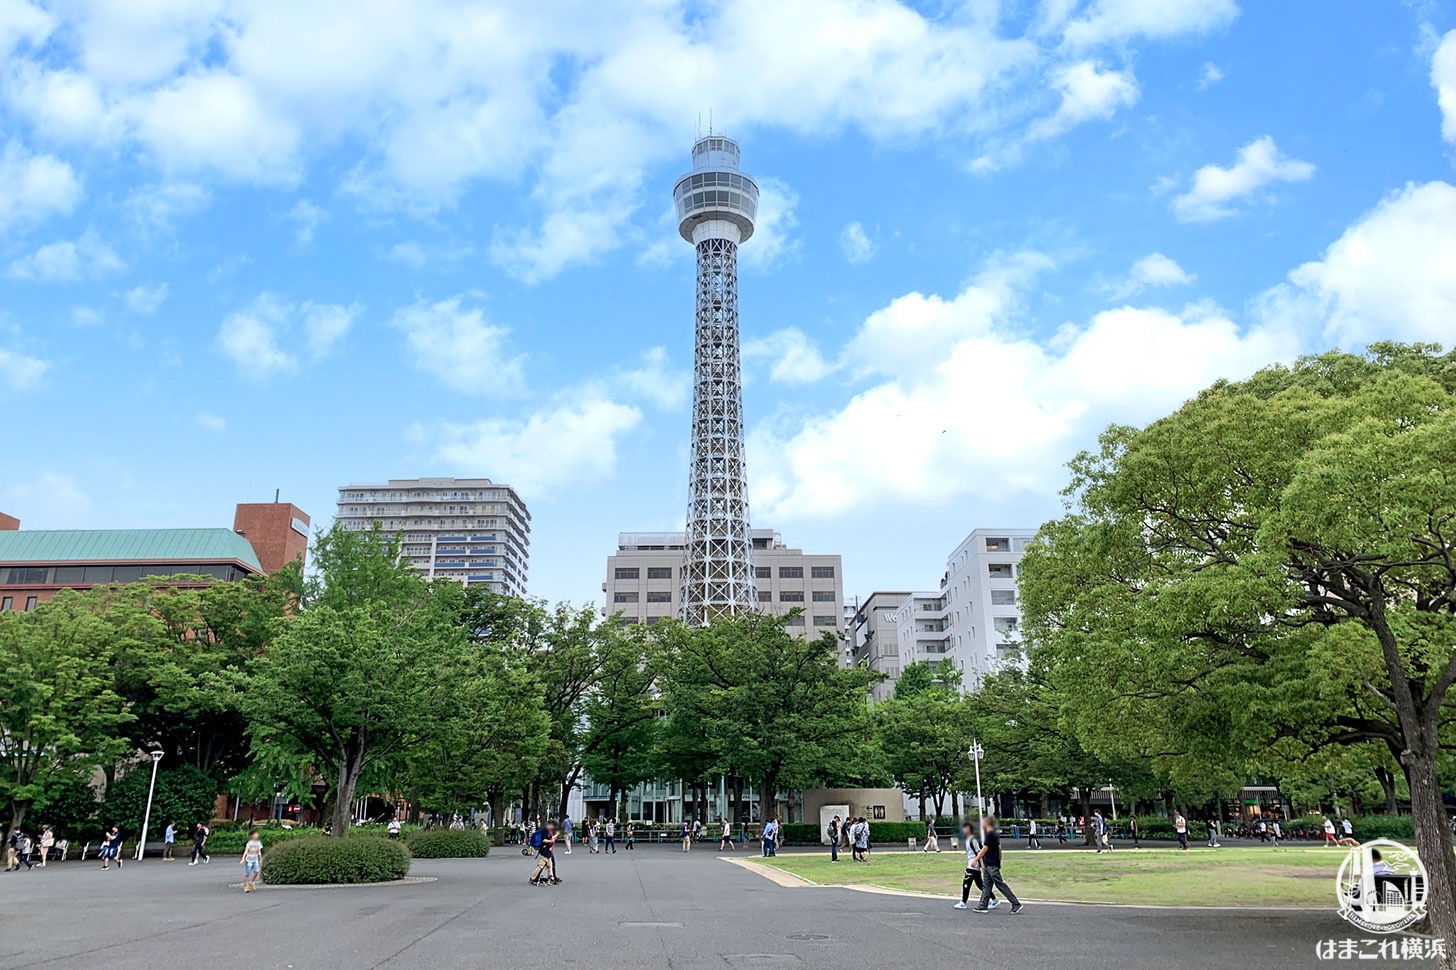 横浜マリンタワー 工事中のの塔体等を活用したライトアップ、7月7日より実施